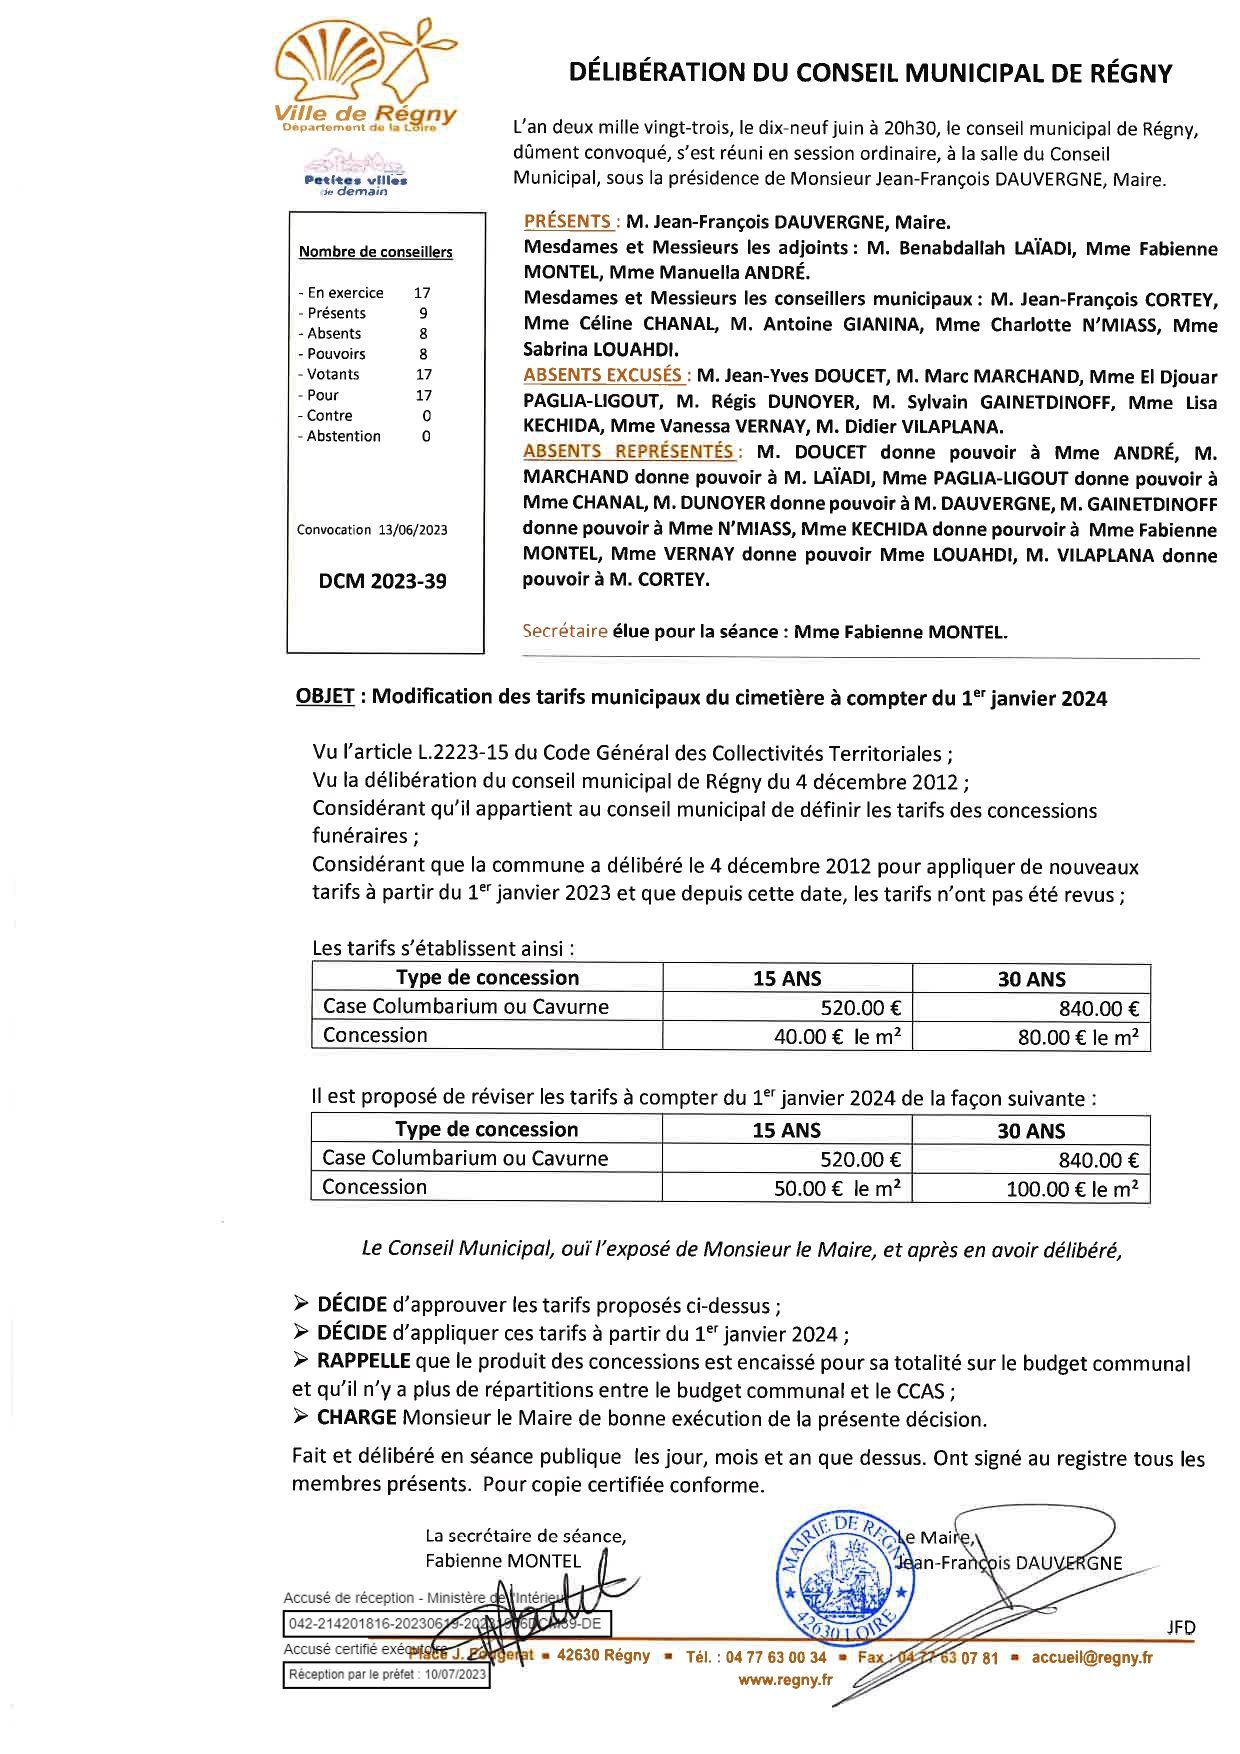 DCM 202339 TARIFS DES CONCESSIONS FUNERAIRES page 0001